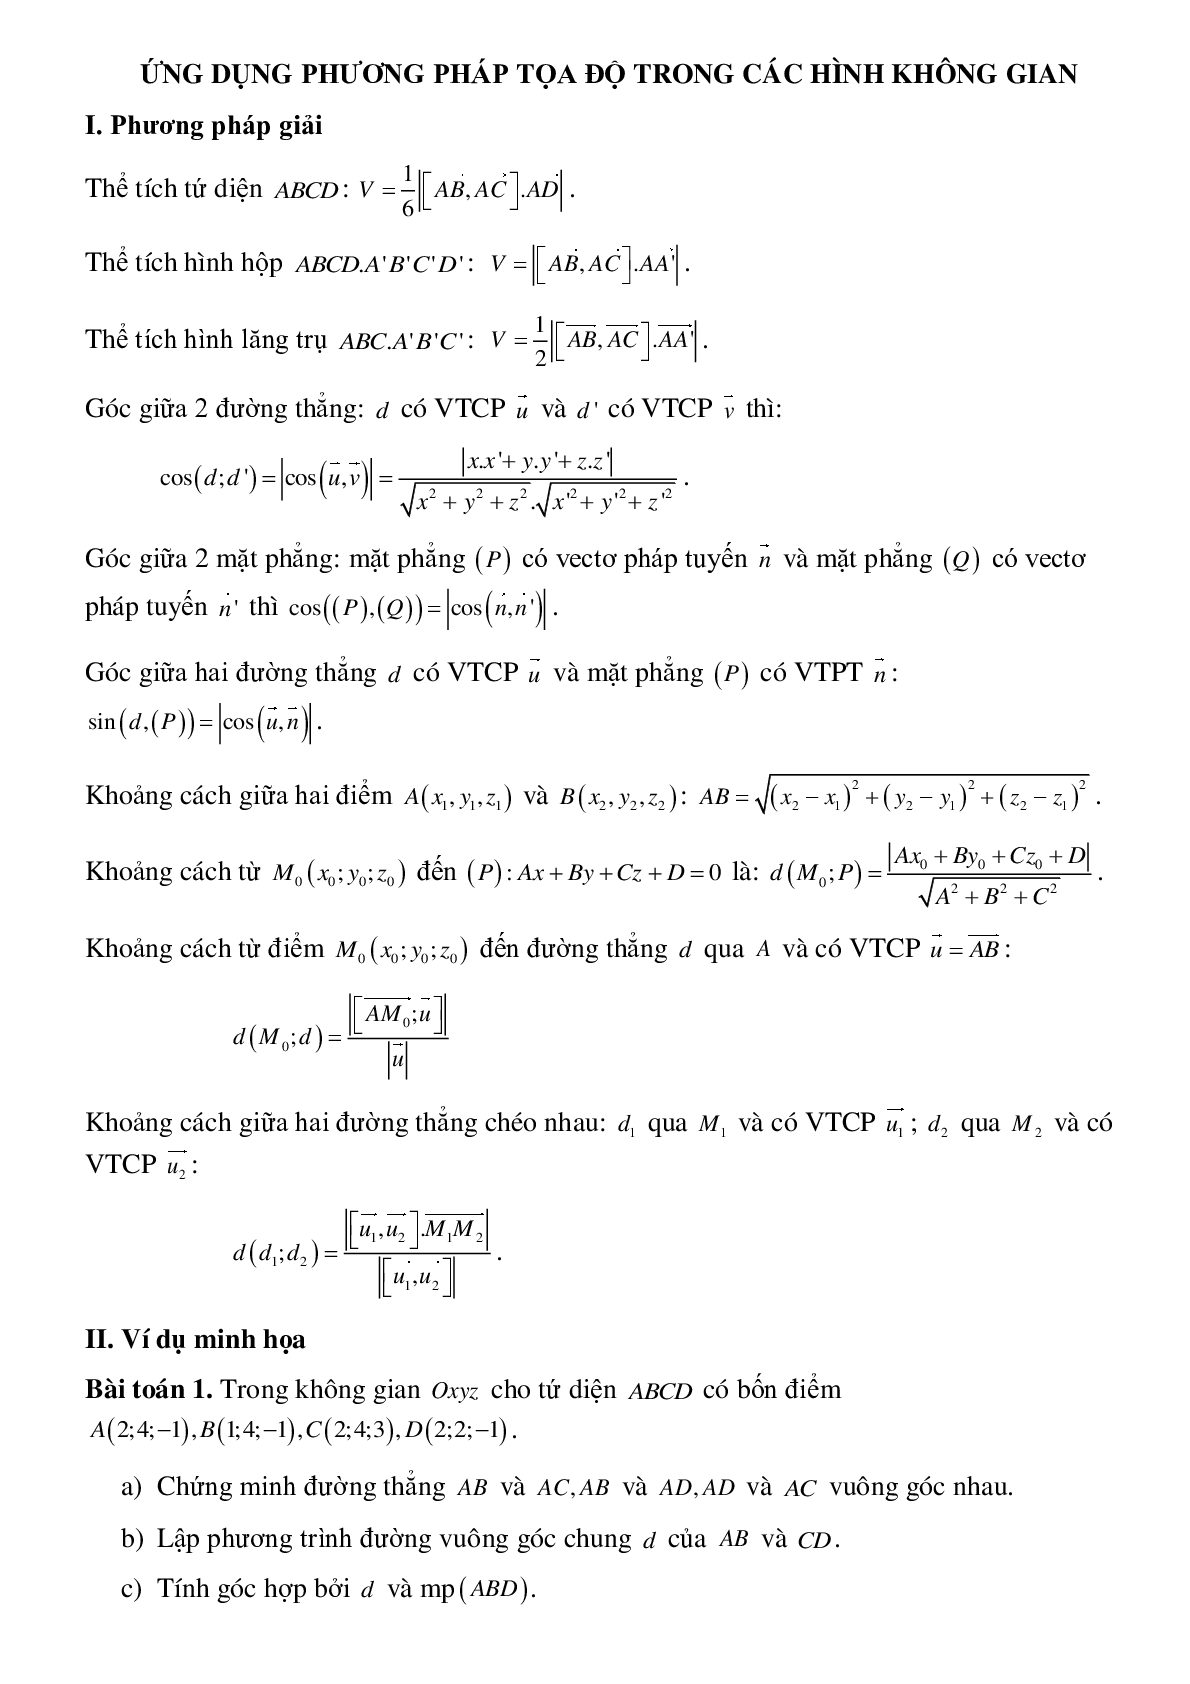 Ứng dụng phương pháp tọa độ trong các hình không gian (trang 1)